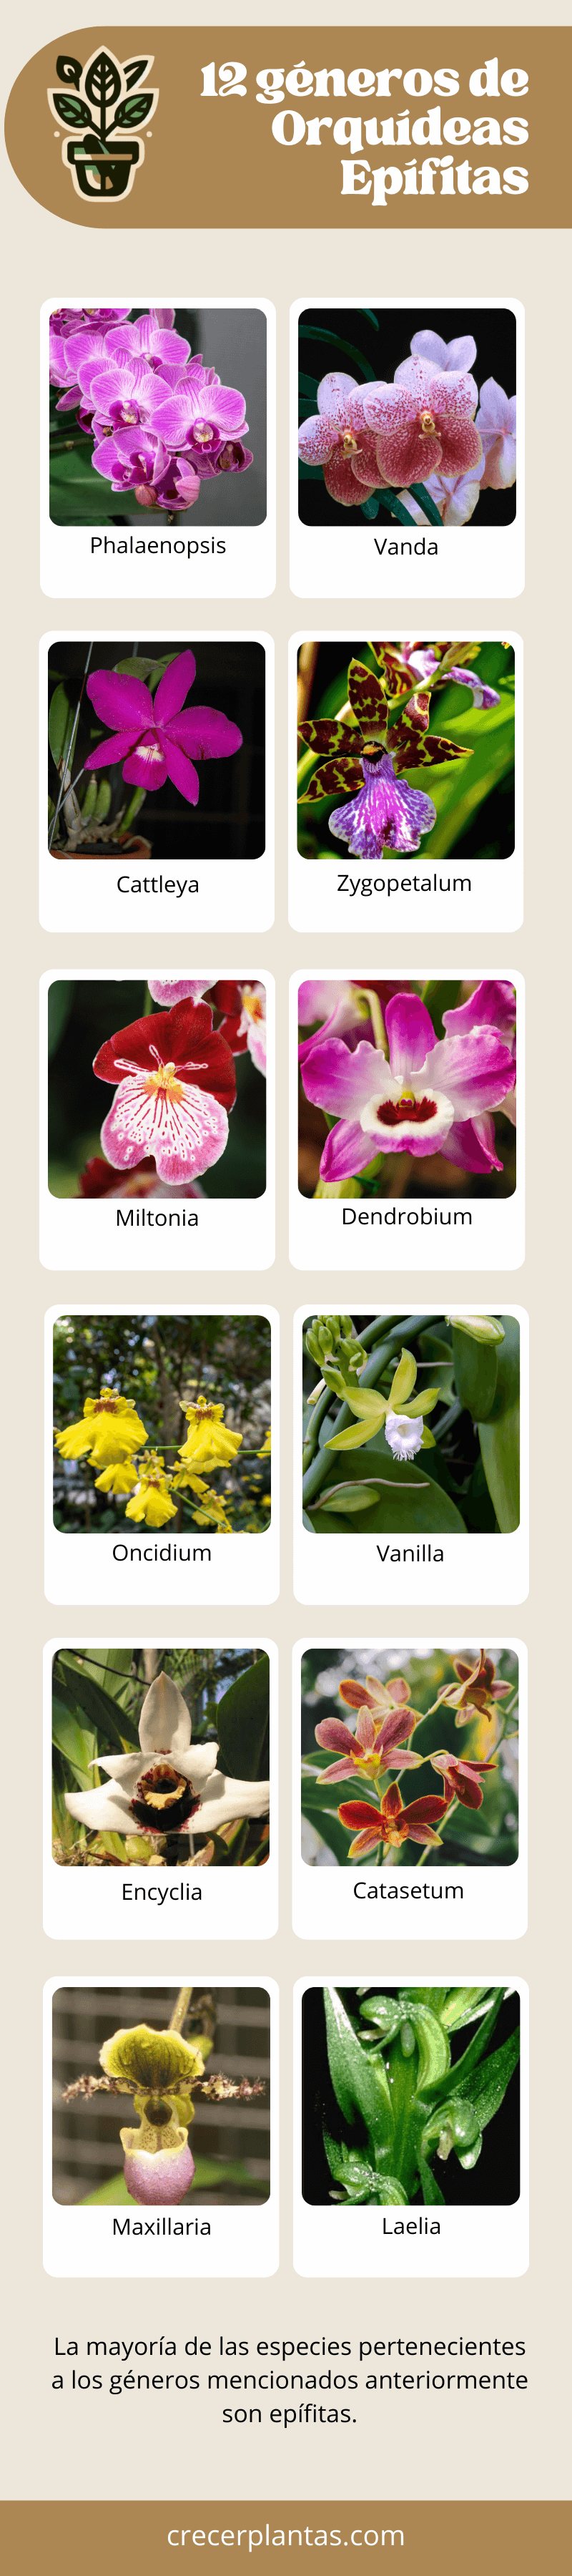 Infografía - especies de orquídeas epífitas